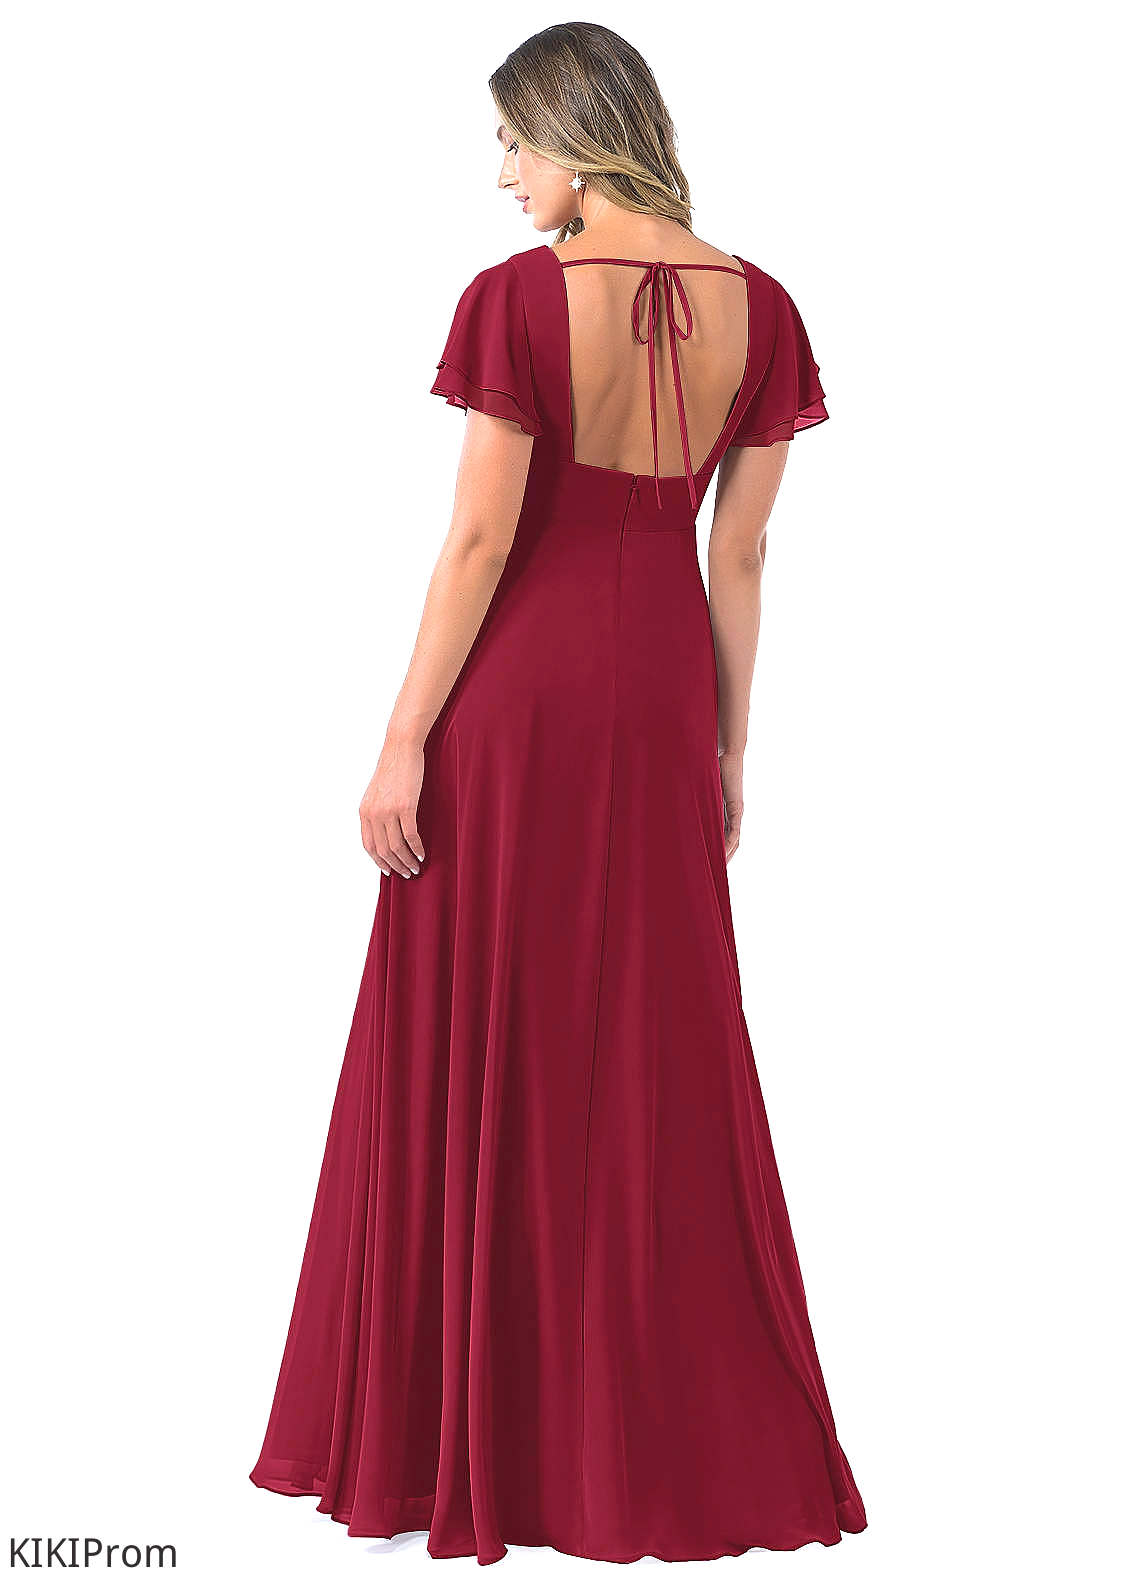 Dahlia Sleeveless Natural Waist Floor Length Off The Shoulder A-Line/Princess Bridesmaid Dresses